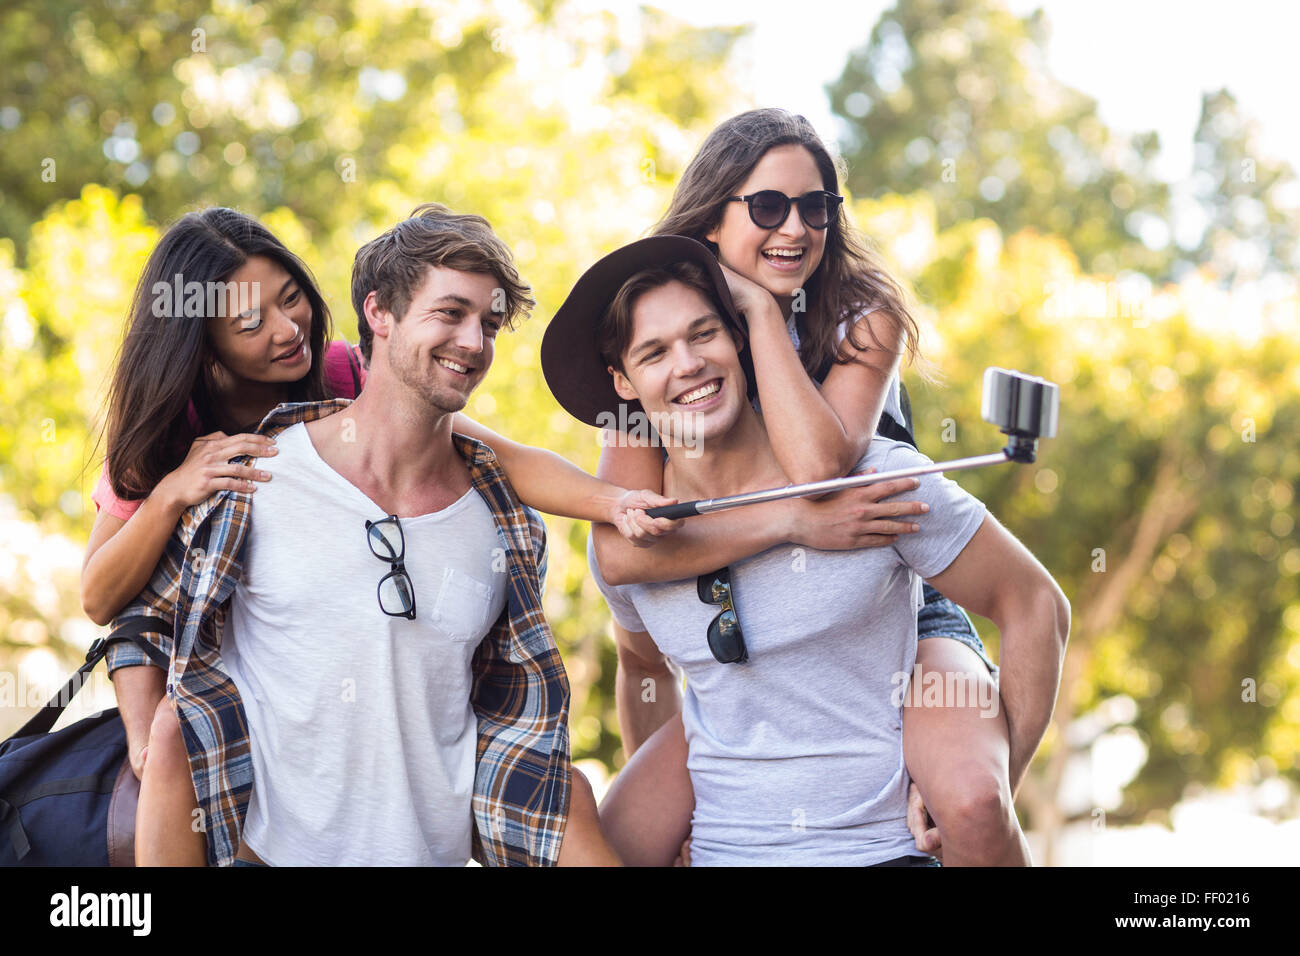 Les hommes de la hanche donnant piggy back pour leurs copines et prendre des selfies Banque D'Images